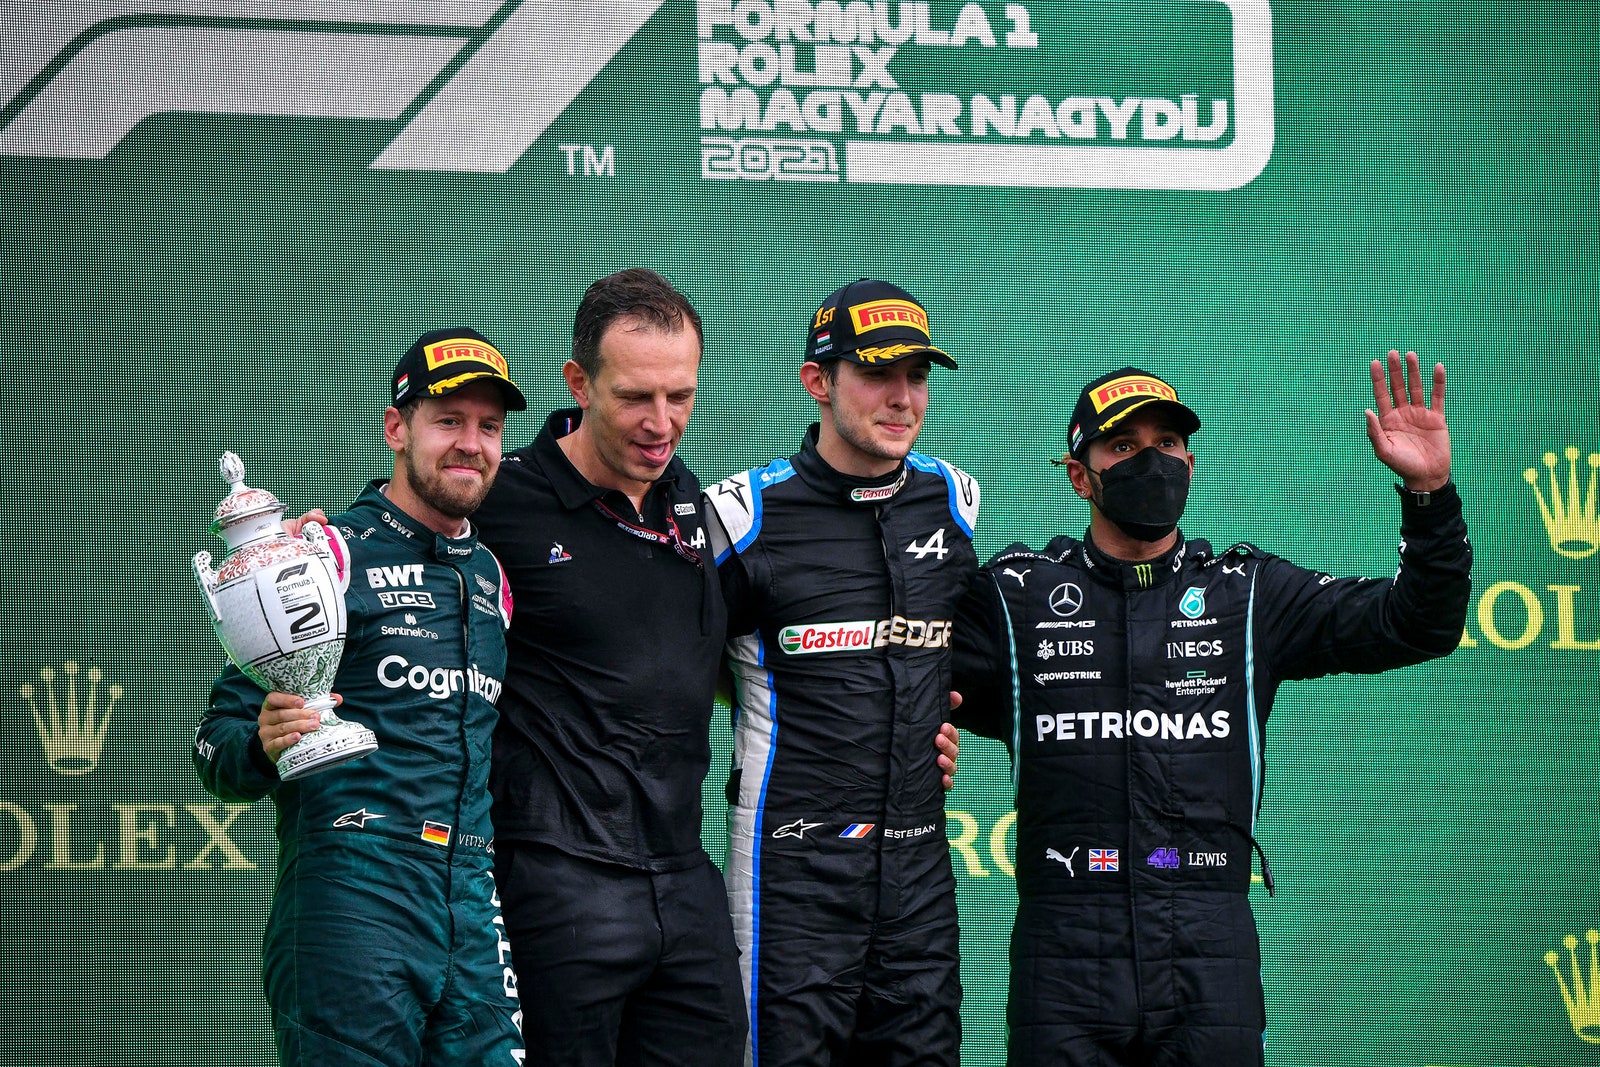 Imagen del podio del GP de Hungría 2021